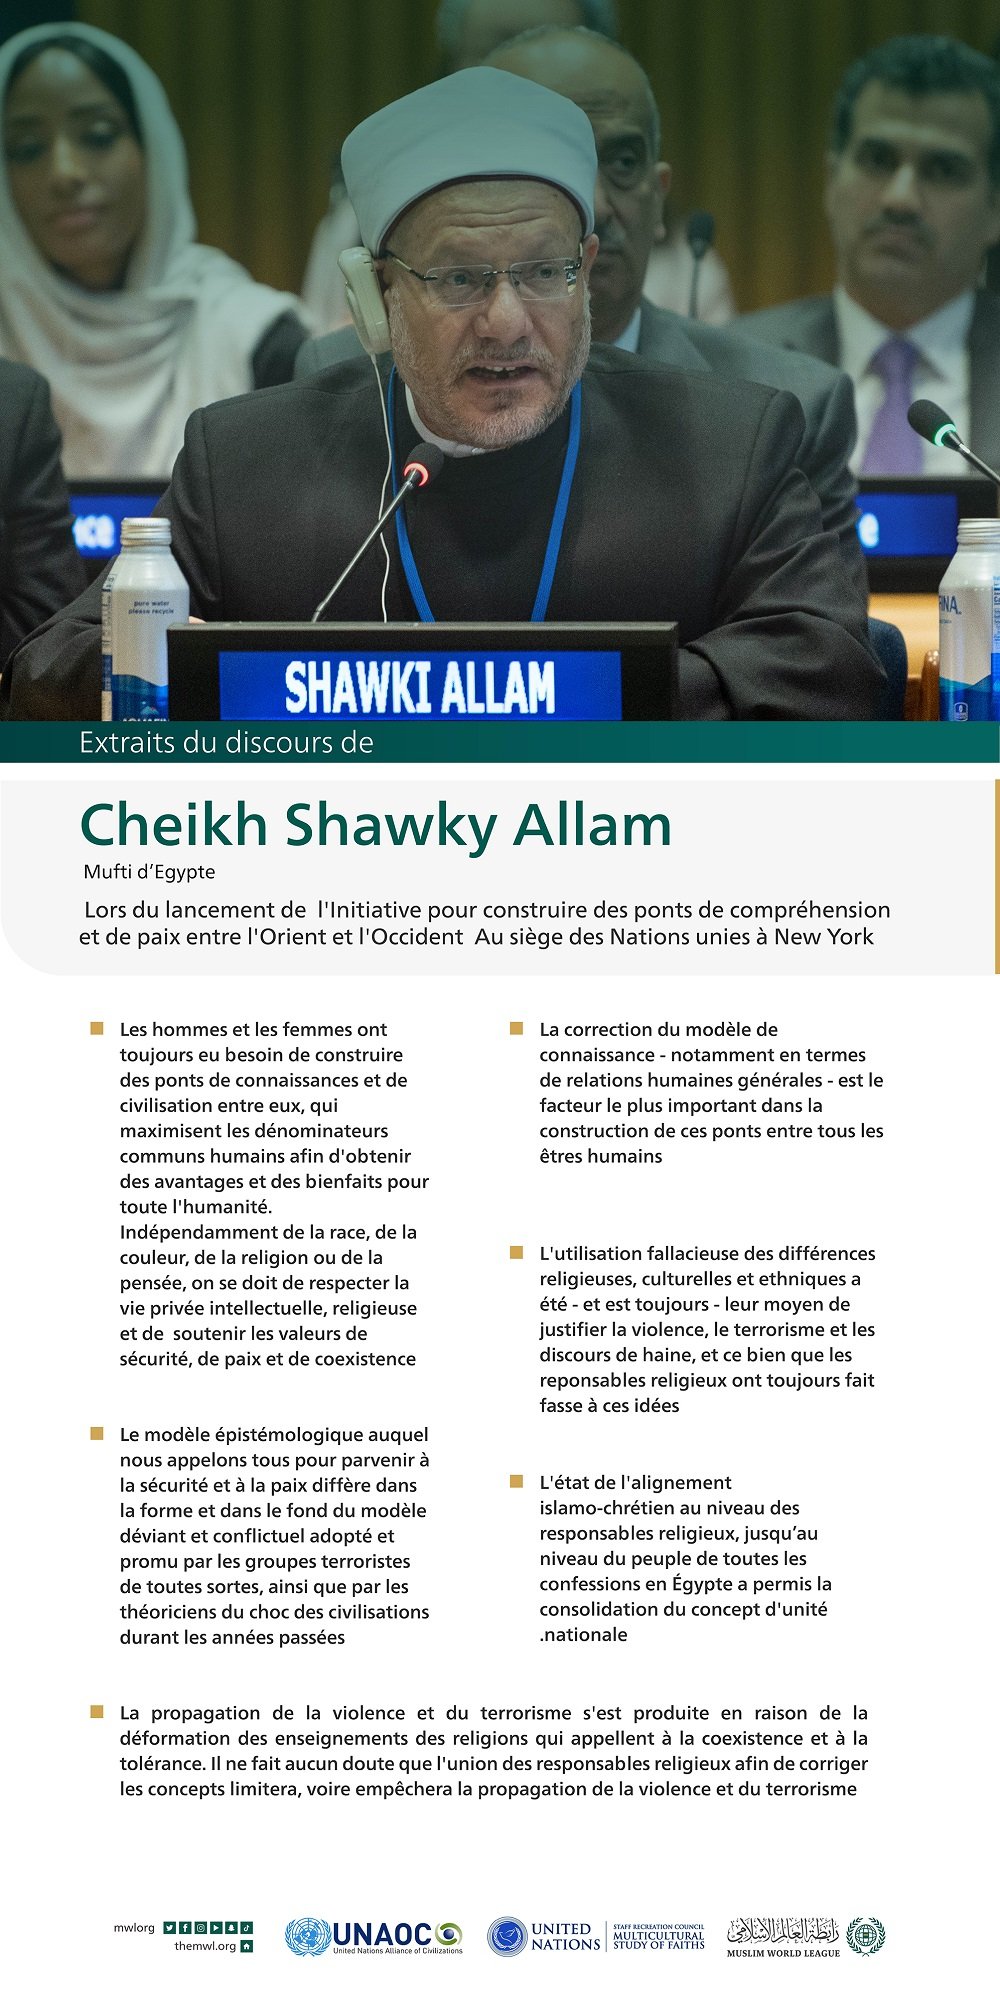 Extraits du discours de Cheikh Shawki Allam, lors du lancement de l'initiative de la Ligue islamique mondiale pour "construire des ponts de compréhension et de paix entre l'Orient et l'Occident " depuis le siège des Nations Unies à New York :